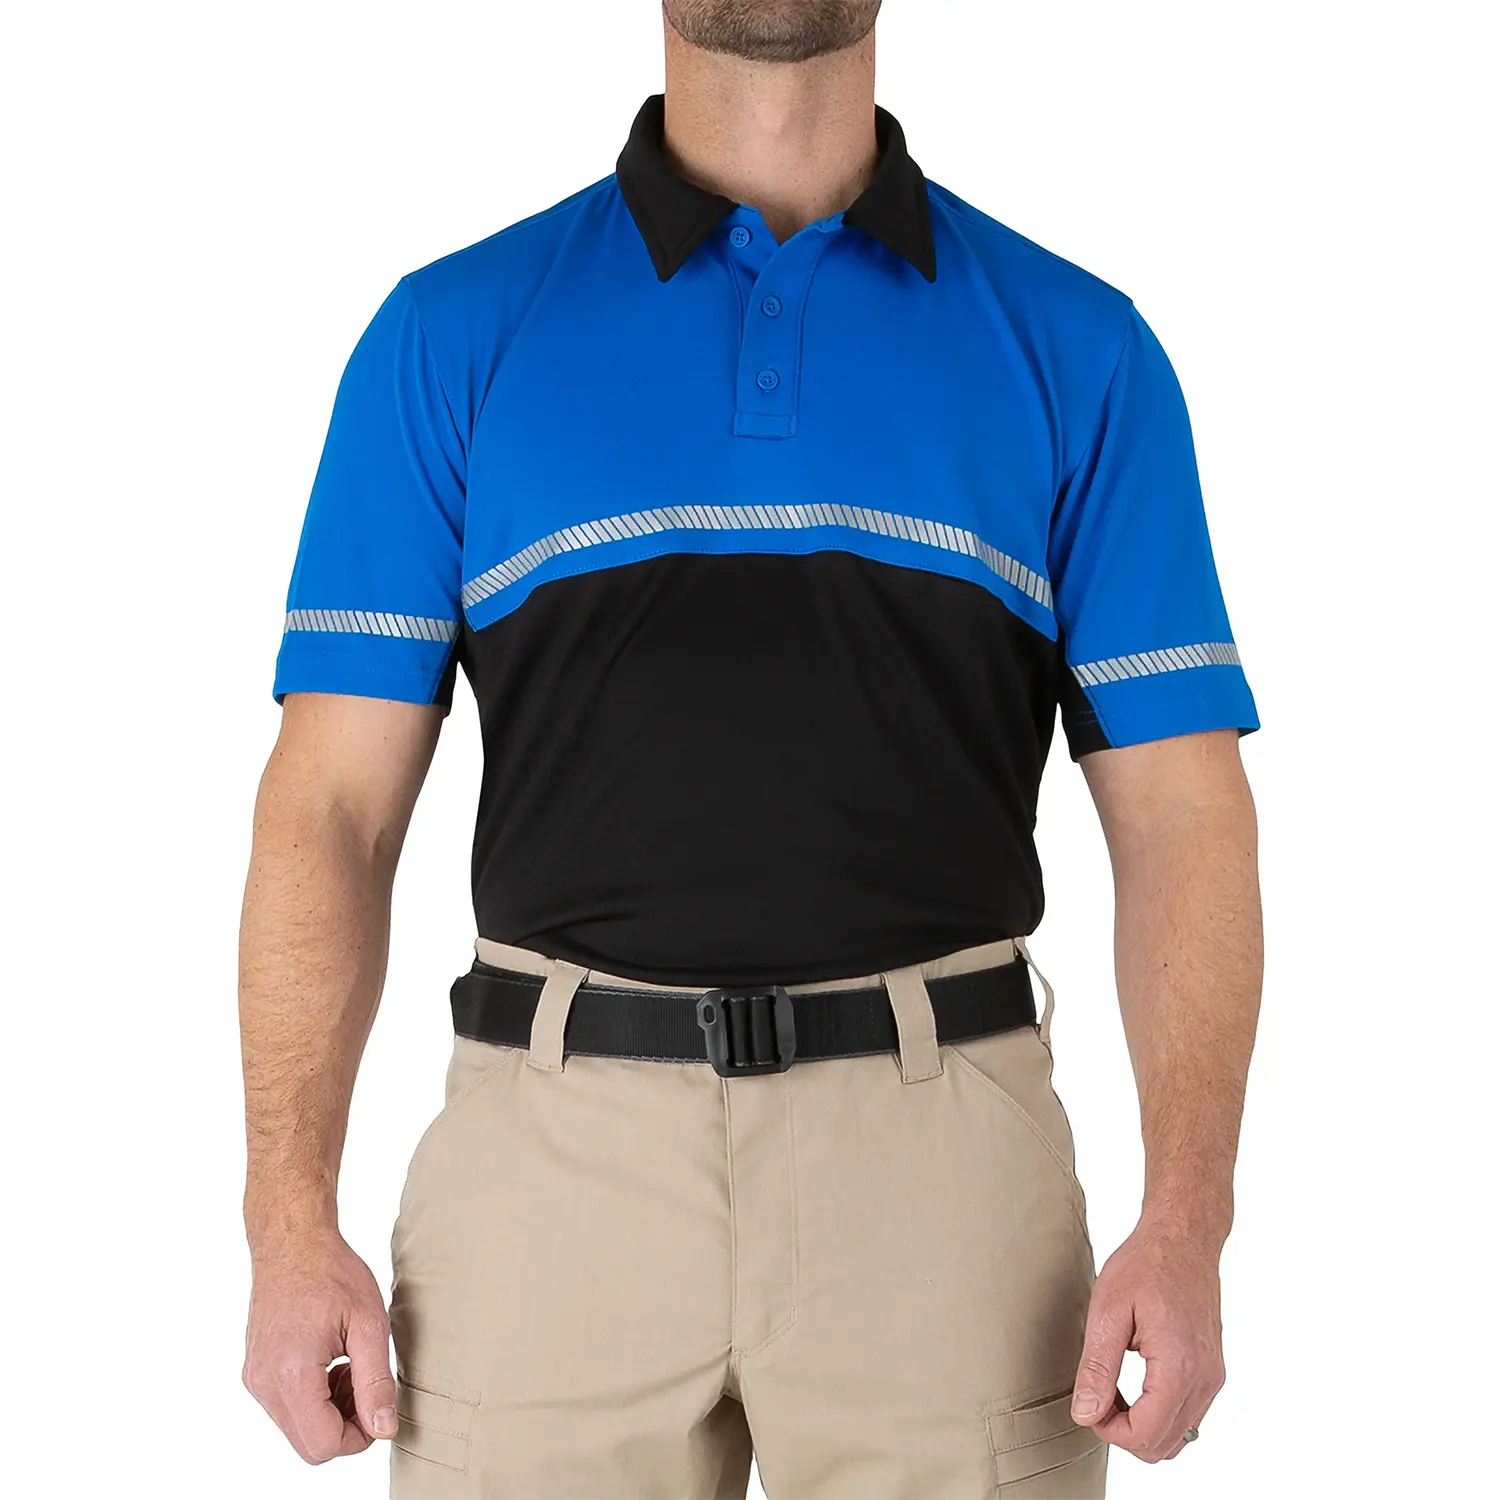 Kaus Polo sepeda Hi-Vis pria taktis pertama desain OEM kaus seragam keamanan P-0-L-I-C-E dua-warna Dry-Fit